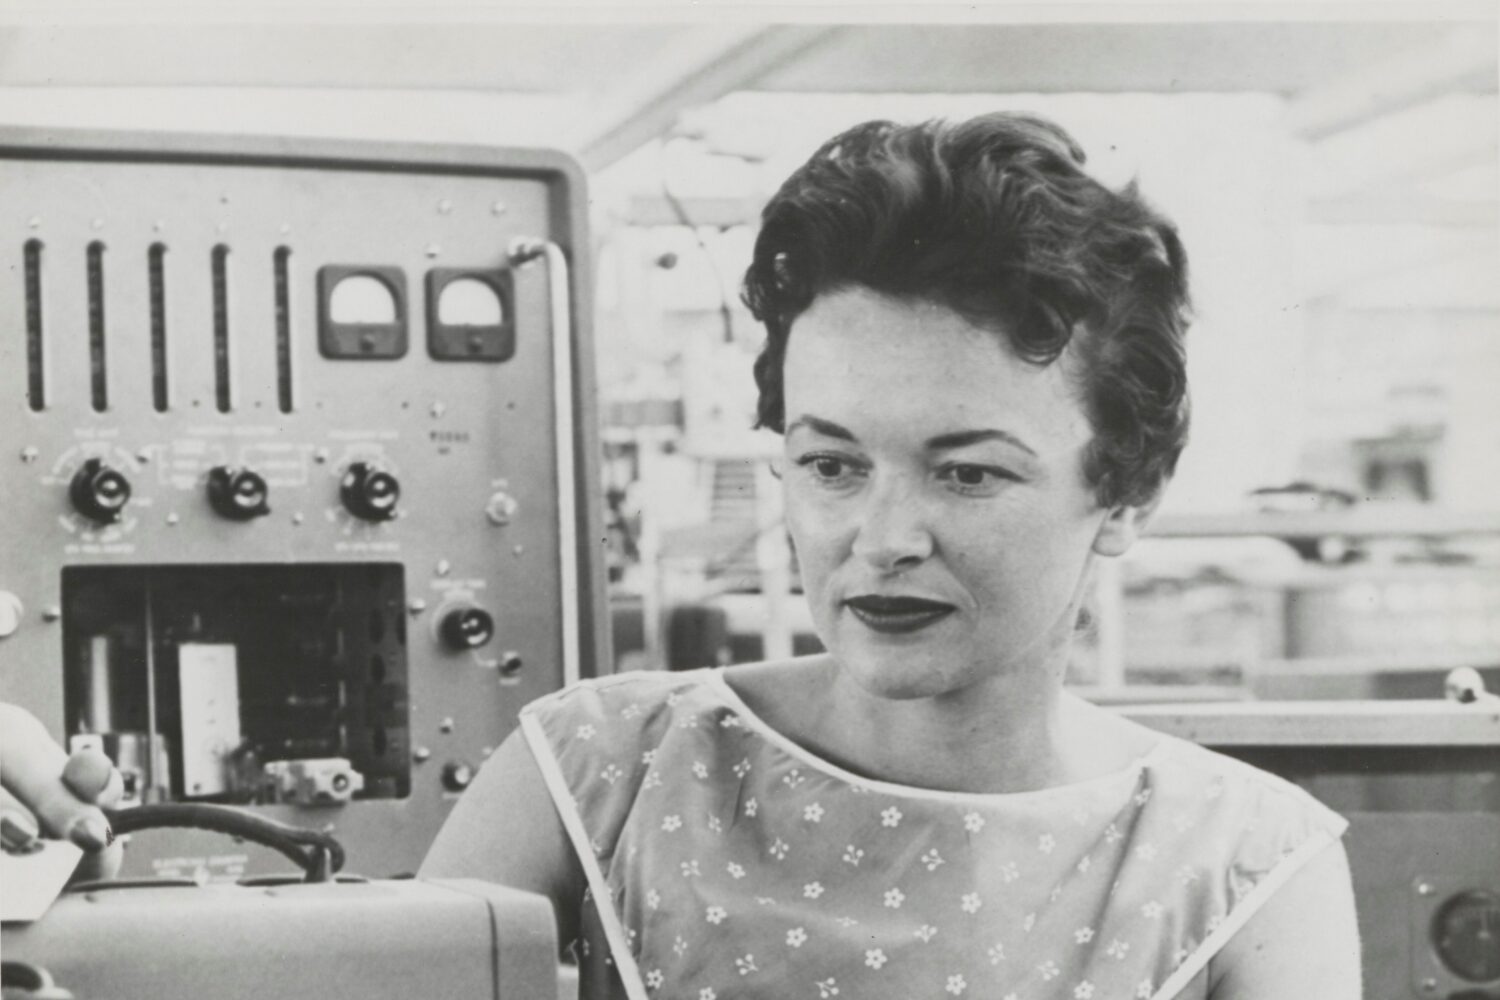 A woman assembling a Hewlett-Packard oscillator in the 1950s or 1960s.